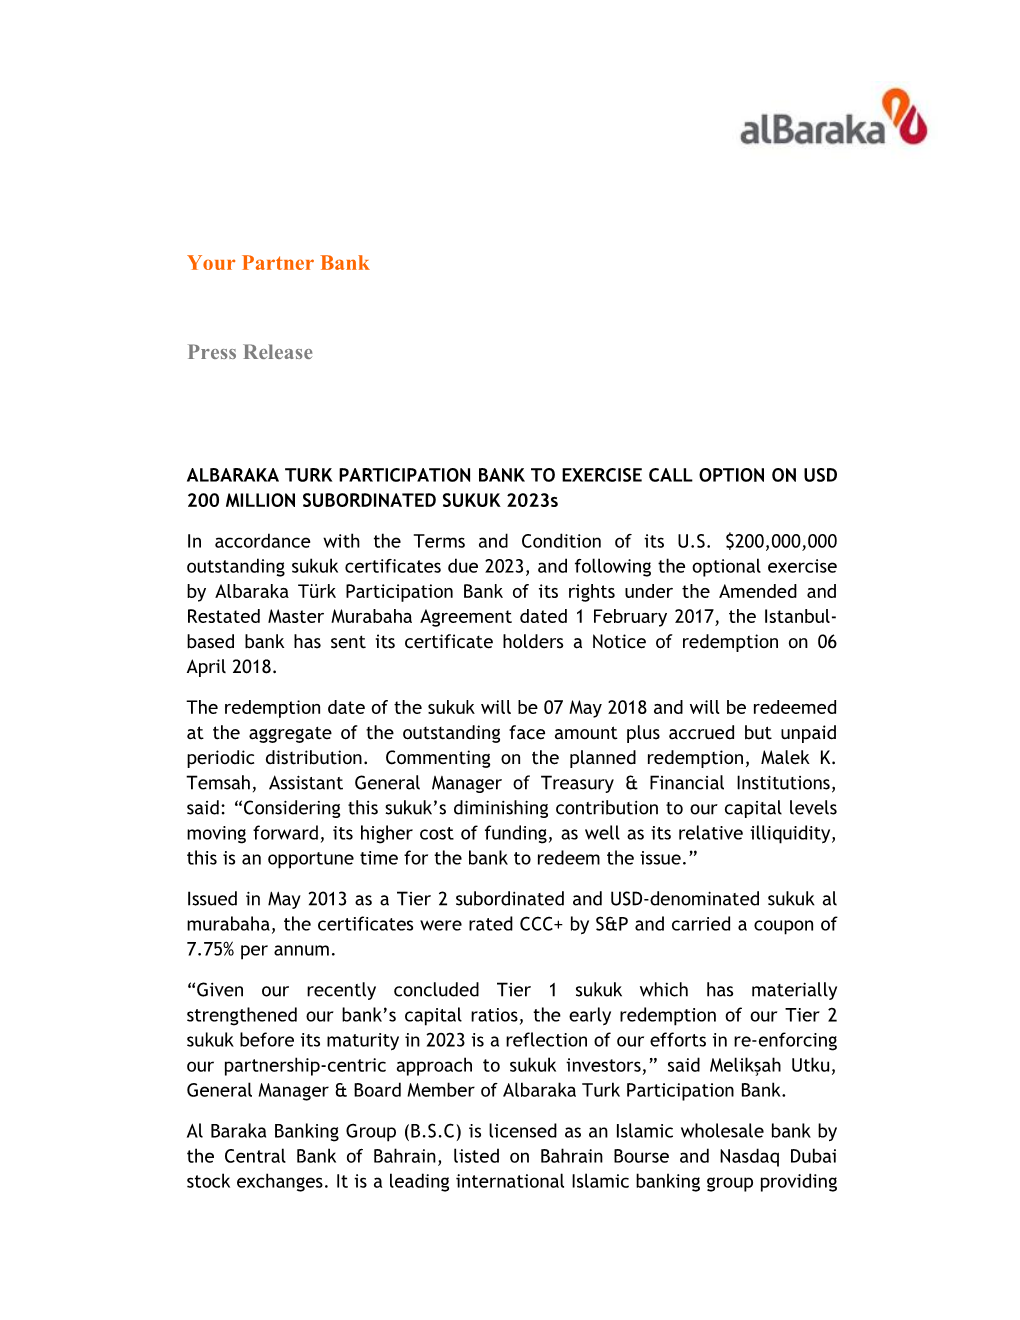 ALBARAKA TURK PARTICIPATION BANK to EXERCISE CALL OPTION on USD 200 MILLION SUBORDINATED SUKUK 2023S